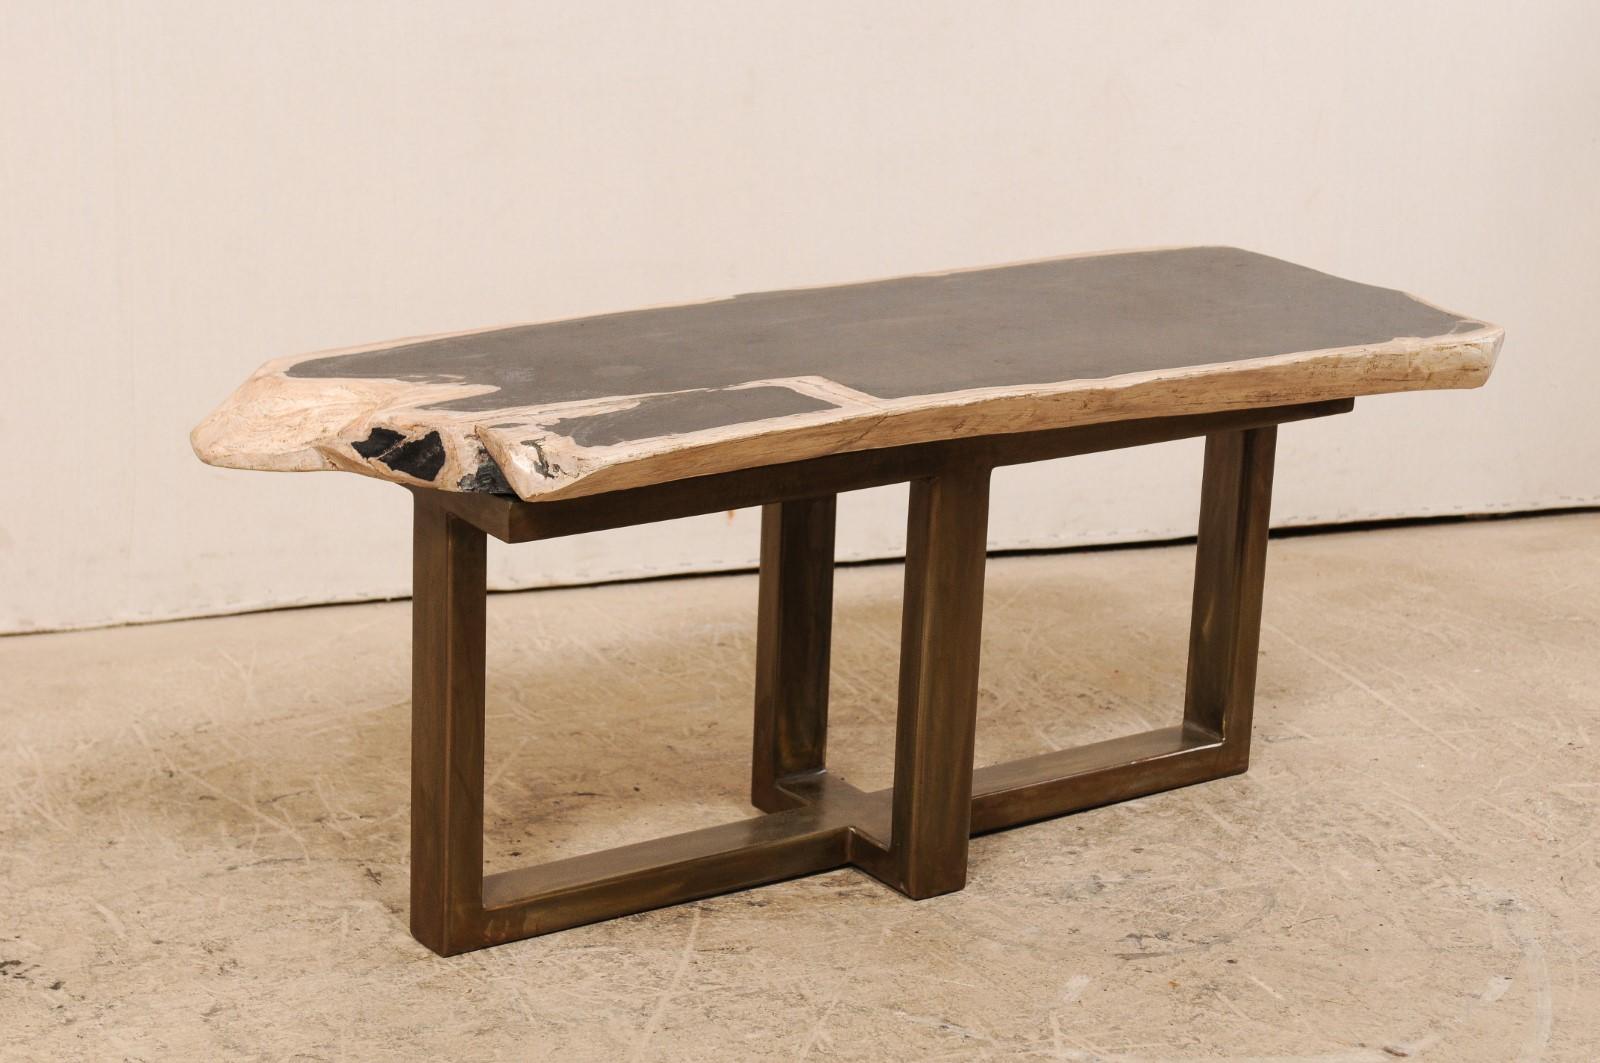 Une table basse (ou un banc) au design moderne et au plateau en bois pétrifié. Cette table basse sur mesure a été fabriquée à partir d'une magnifique dalle épaisse de bois pétrifié poli, de forme rectangulaire et d'une longueur d'un peu plus d'un